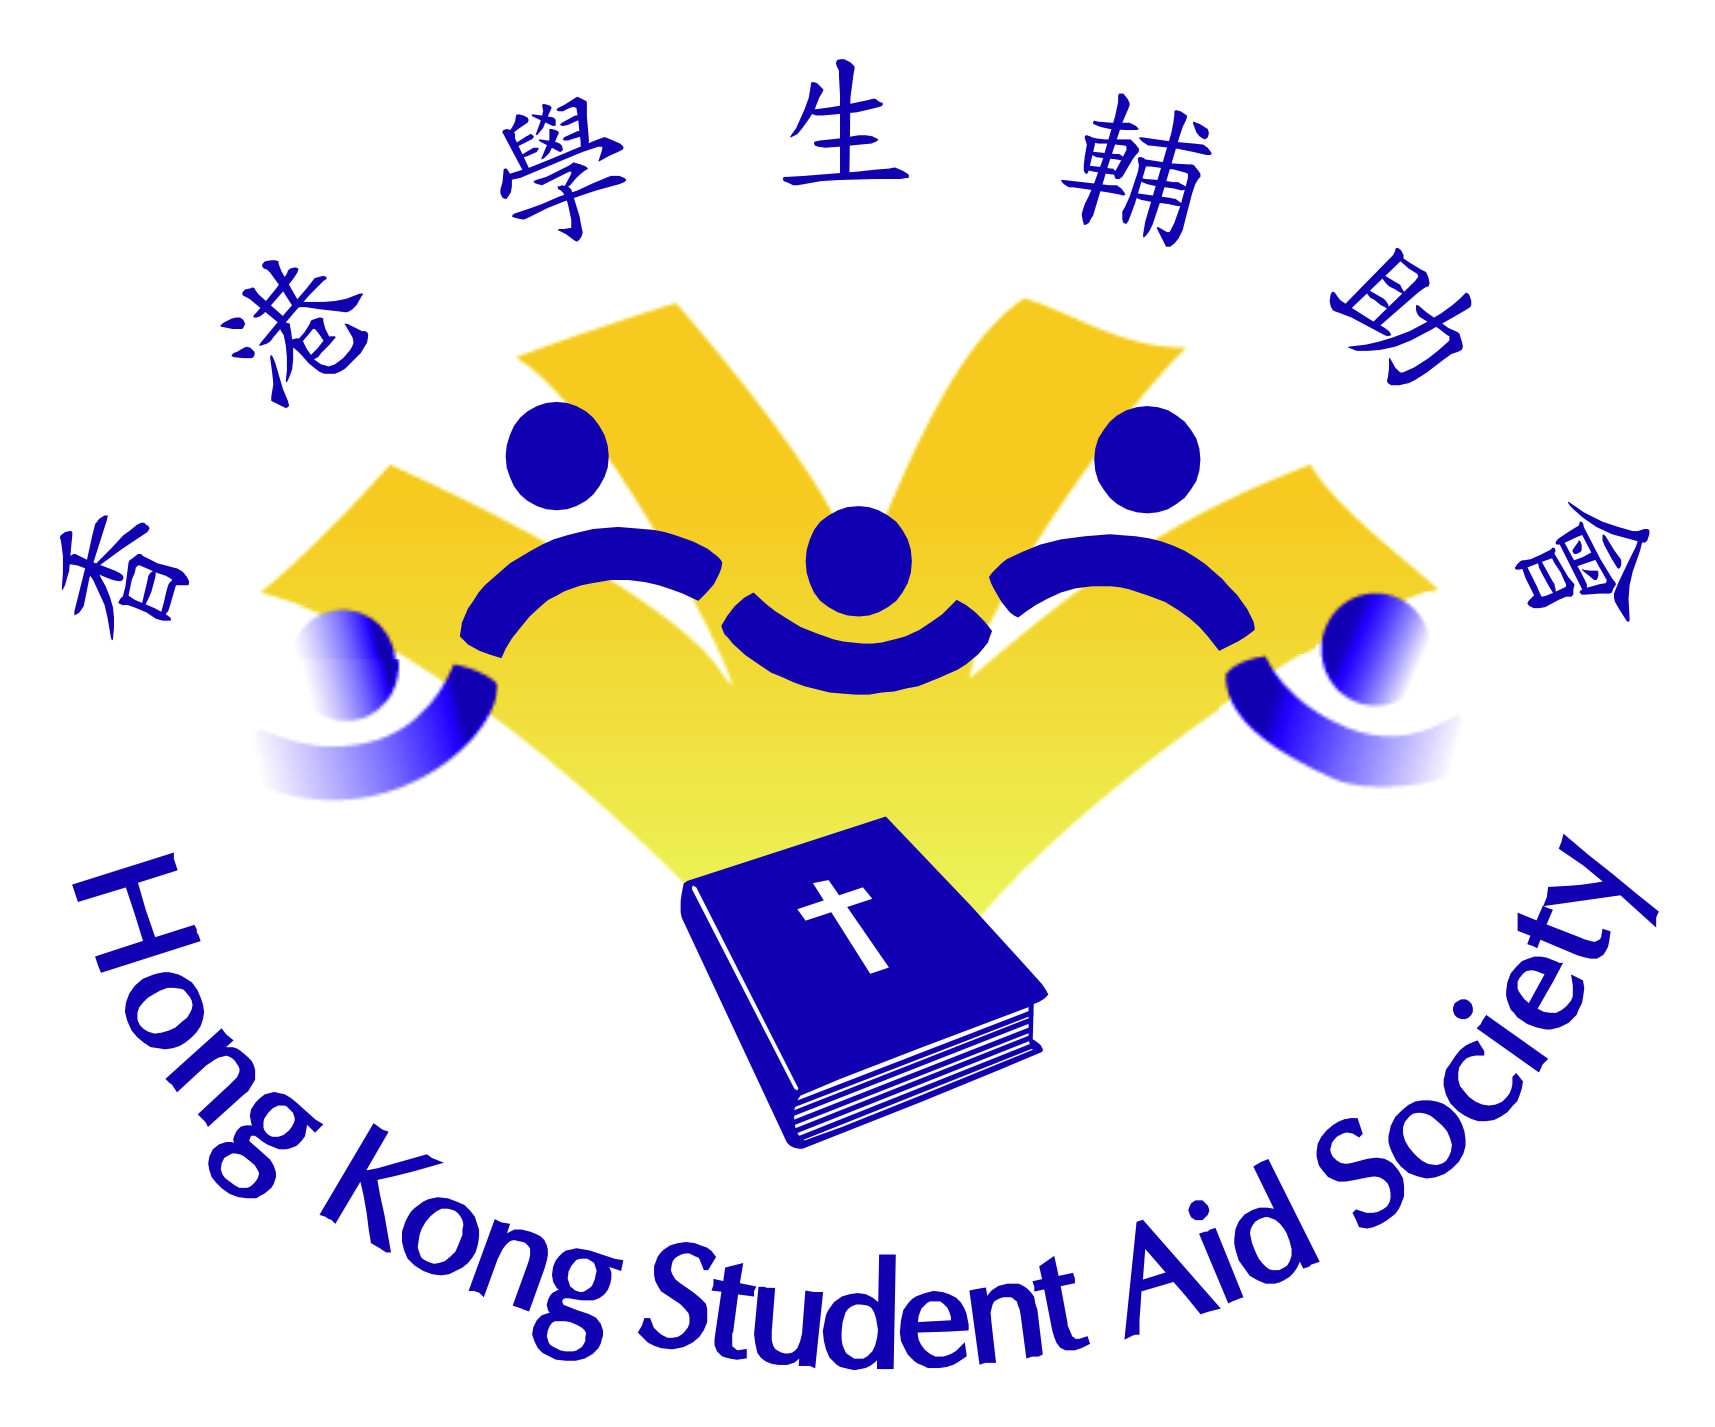 Hong Kong Student Aid Society 香港學生輔助會